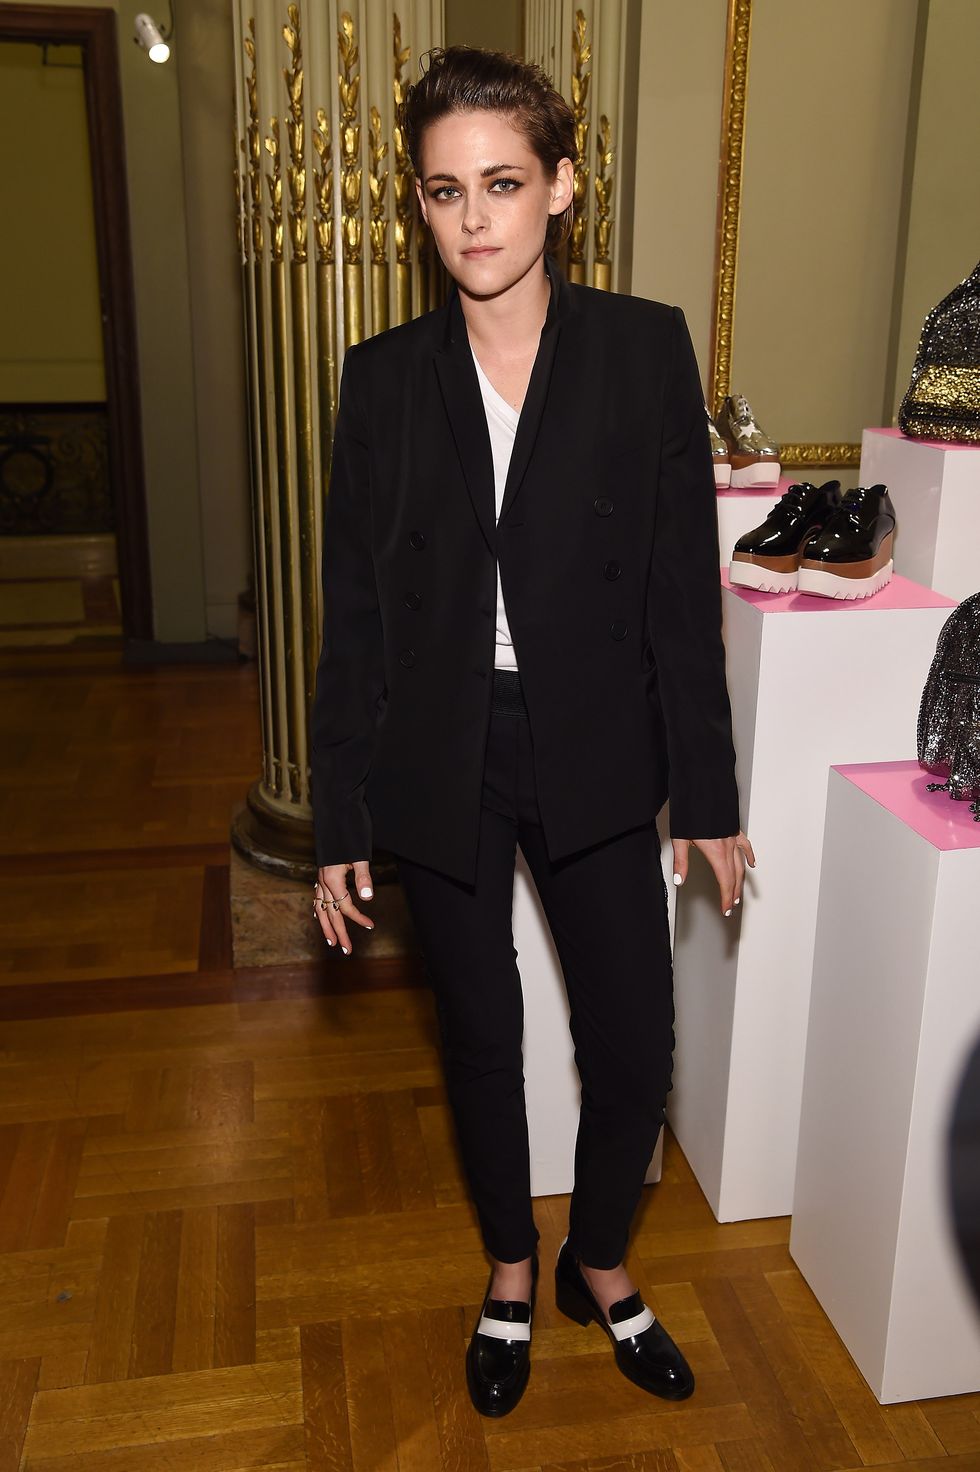 Kristen Stewart in a black suit at the Stella McCartney Autumn 2015 presentation